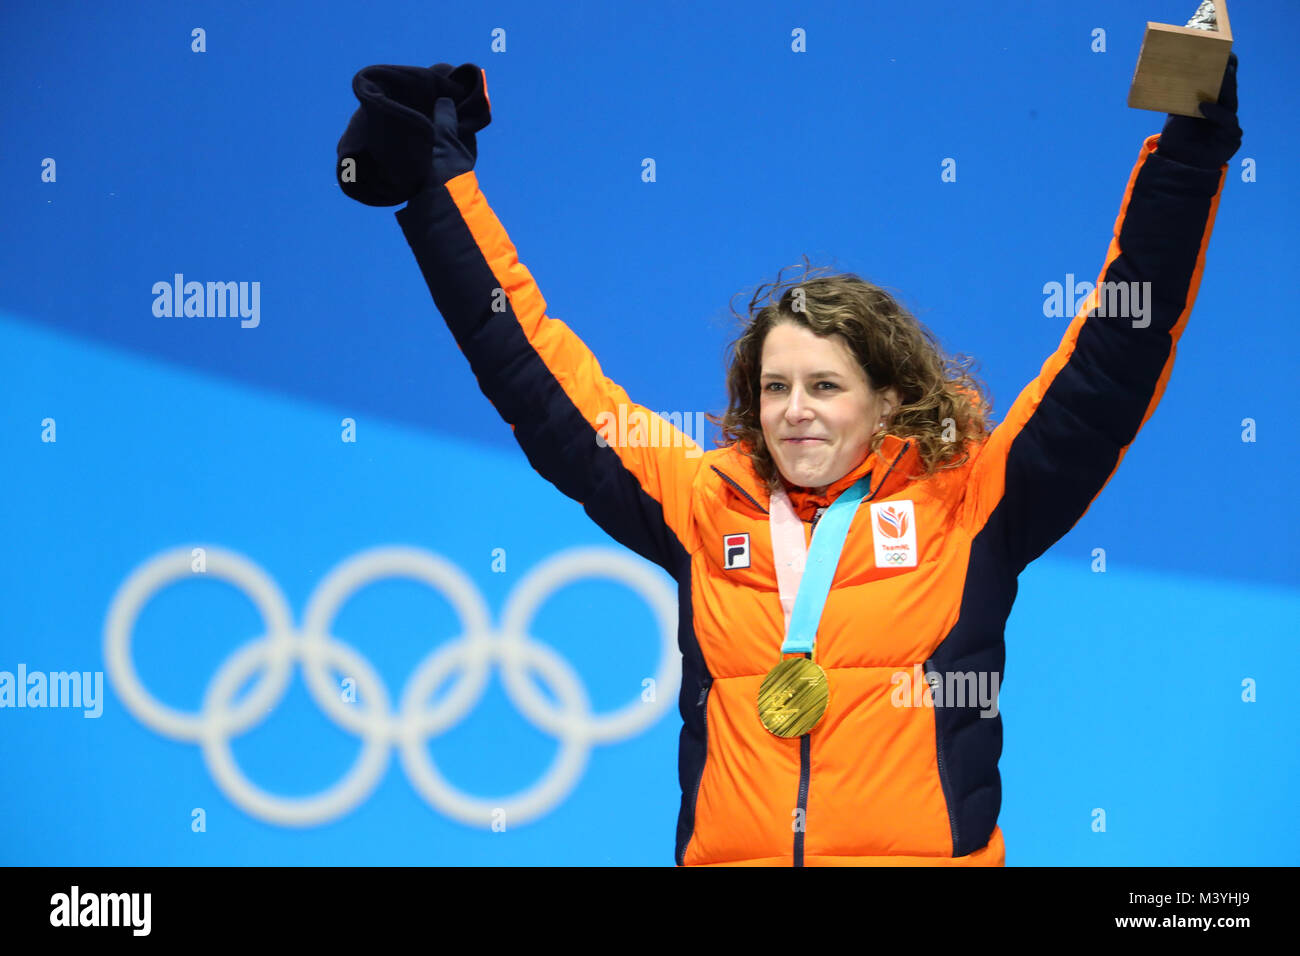 Patinadora holandesa Ireen Wuest celebra una medalla de oro en los Juegos Olímpicos de Invierno de Pyeongchang, Corea del Sur, 13 de febrero de 2018. Foto: Michael Kappeler/dpa Foto de stock